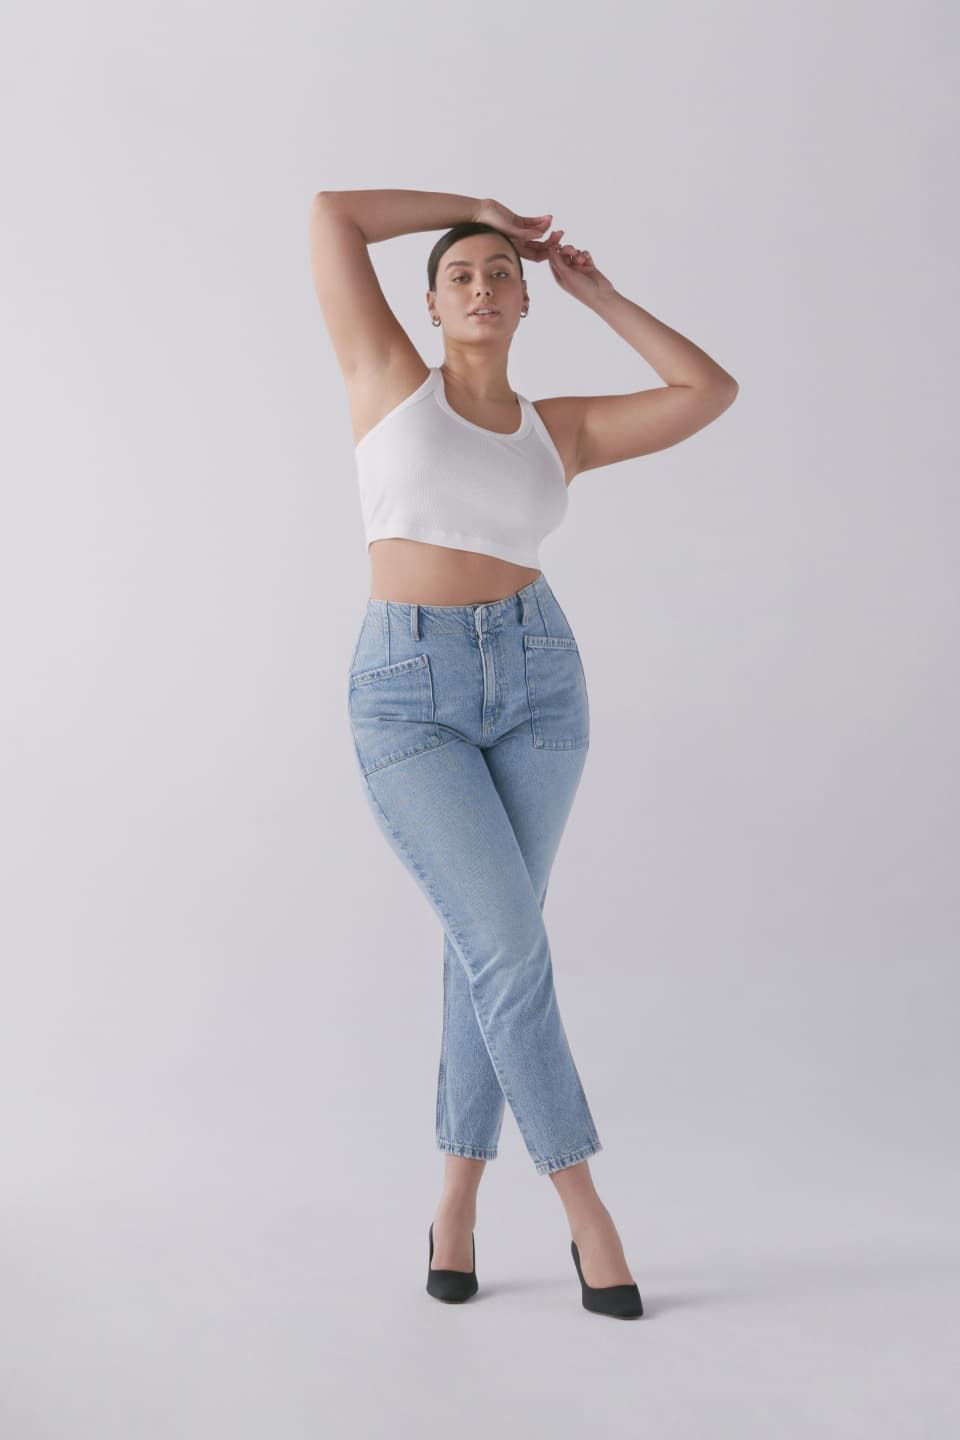 Une mannequin porte une cami sport blanche avec un jean « mom » bleu.